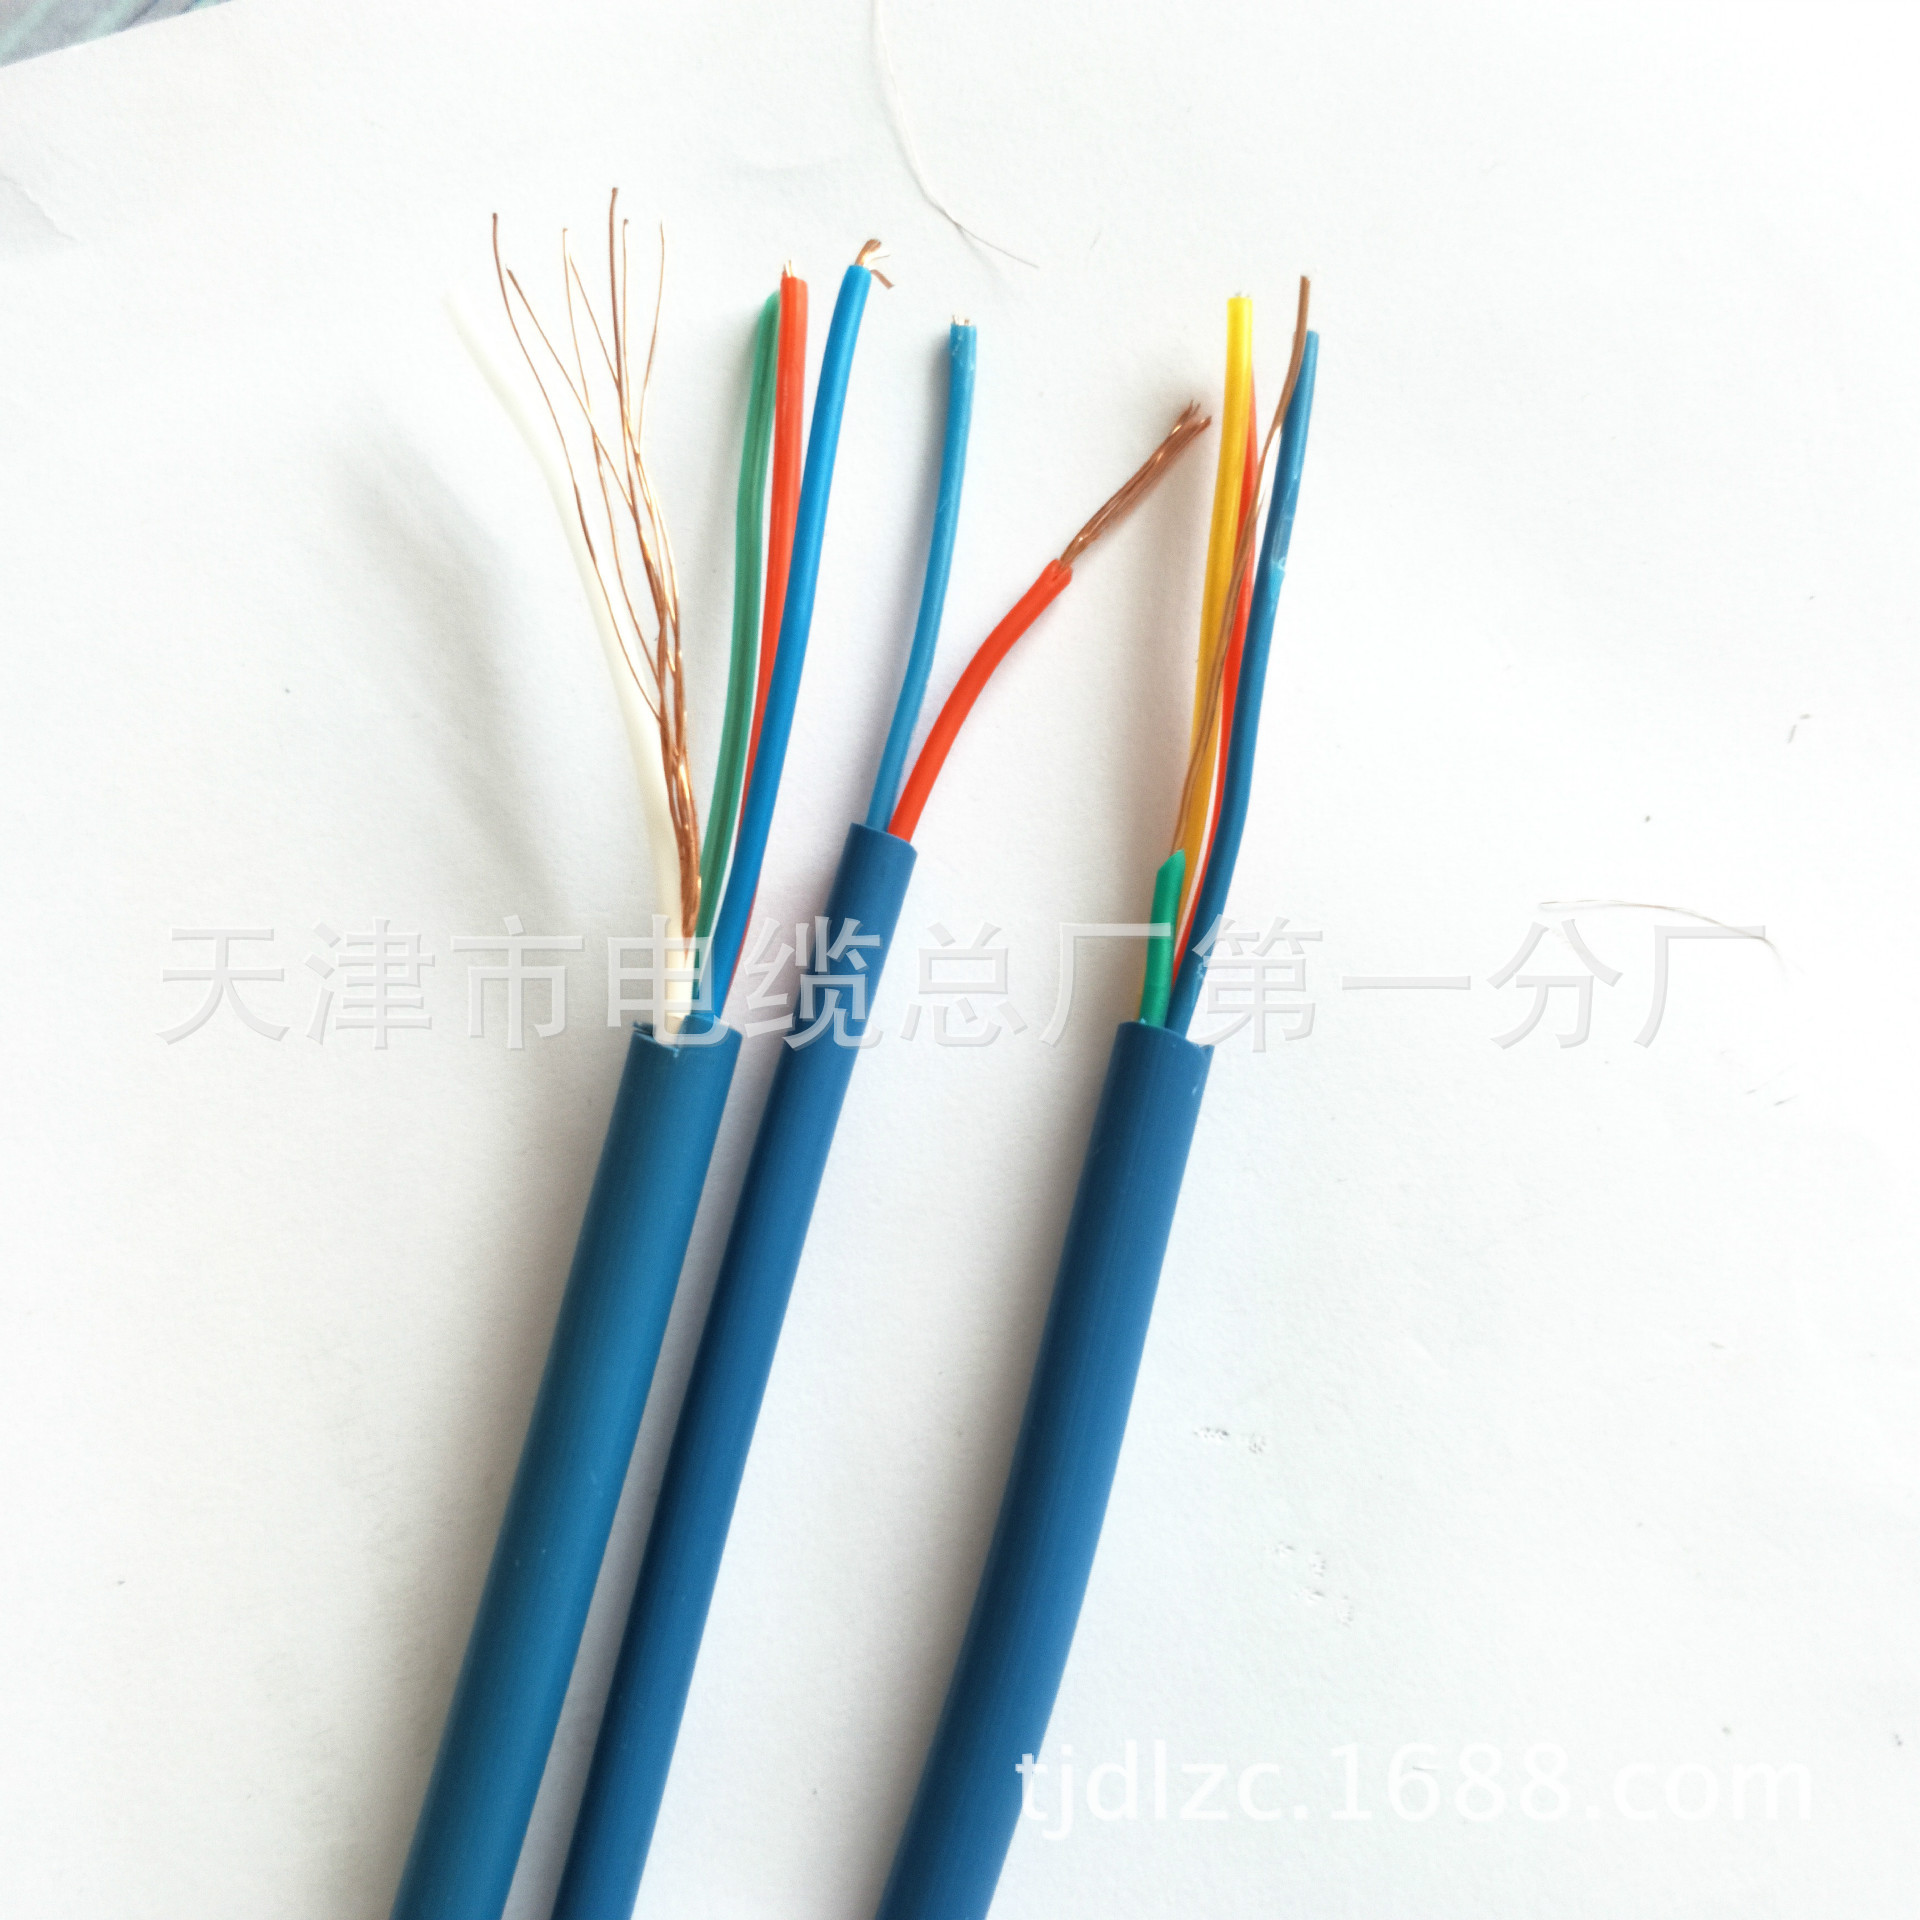 MHYV1*4X7/0.37矿用通线电缆 厂家直销价格优惠示例图8